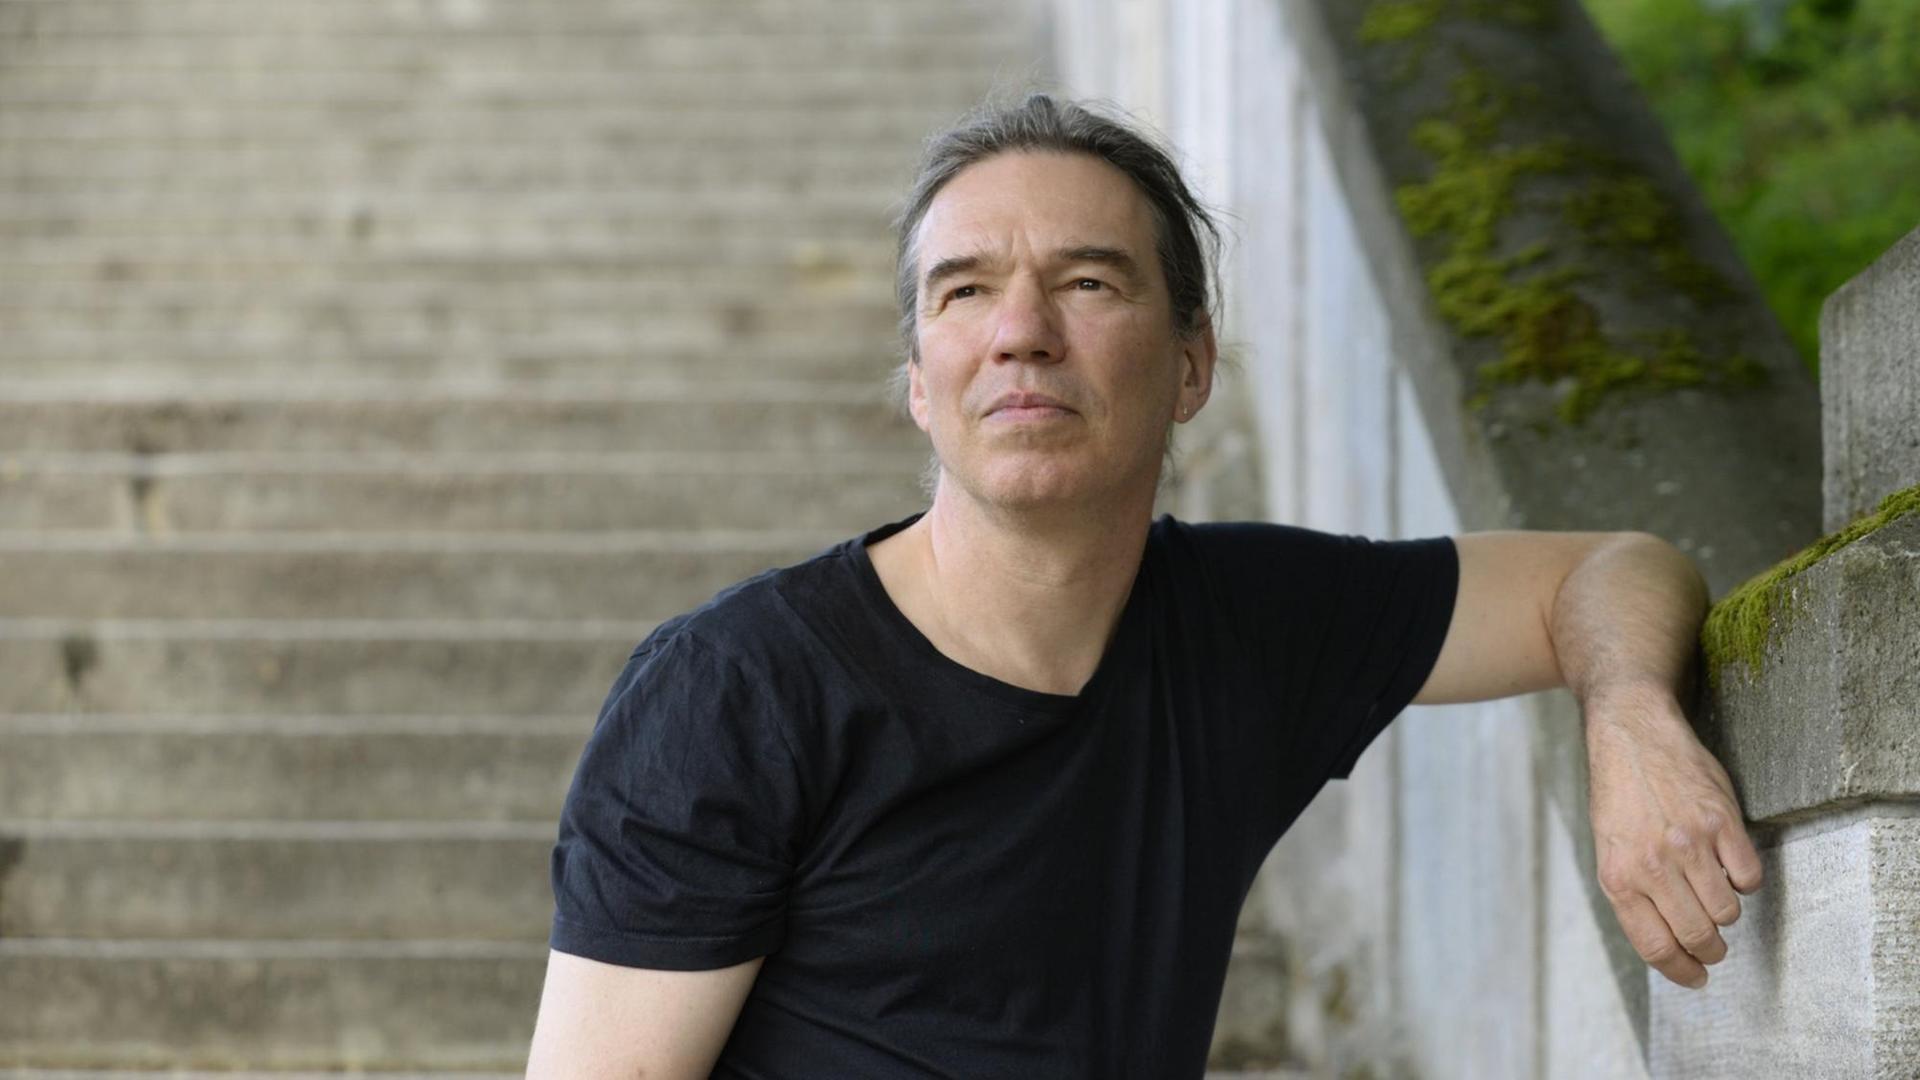 Ein Porträtfoto zeigt Michael Wildenhain, Autor und Schriftsteller angelehnt an eine Treppe im öffentlichen Raum.